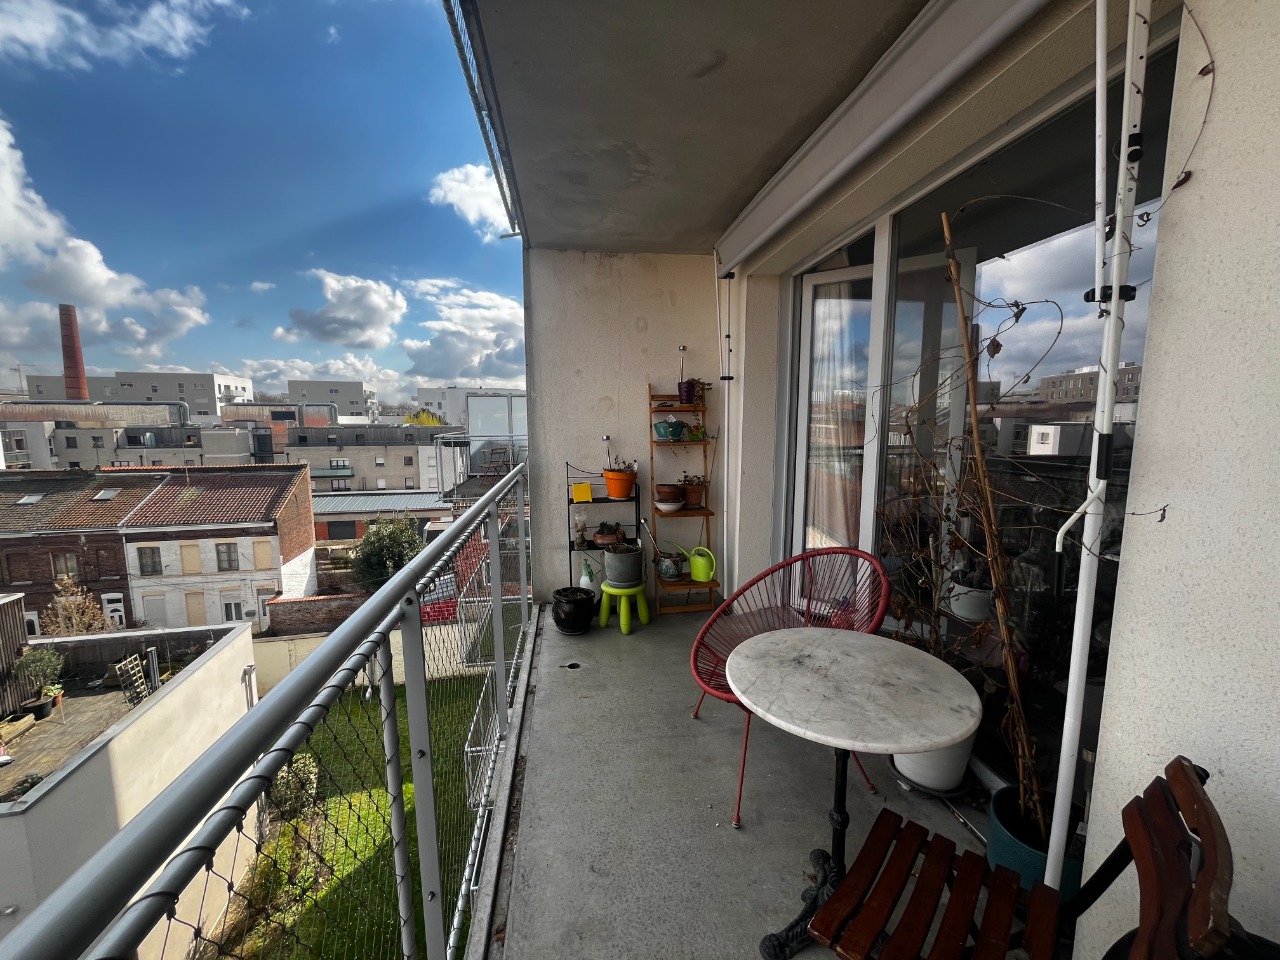 Rue de douai appartement type 3 avec balcon et garage Photo 2 - JLW Immobilier